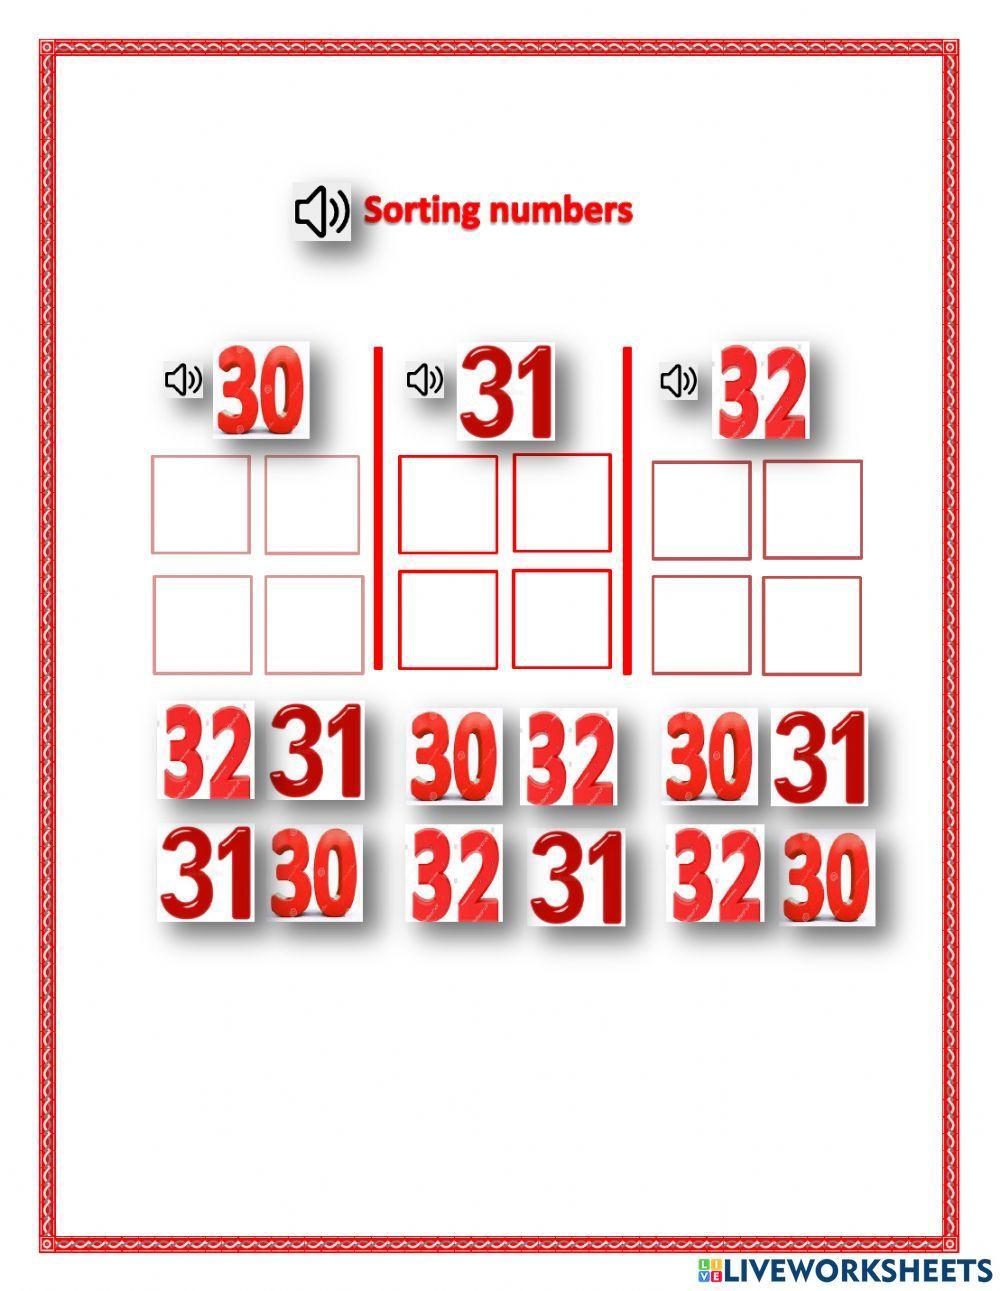 sorting number 30,31,32 - LN